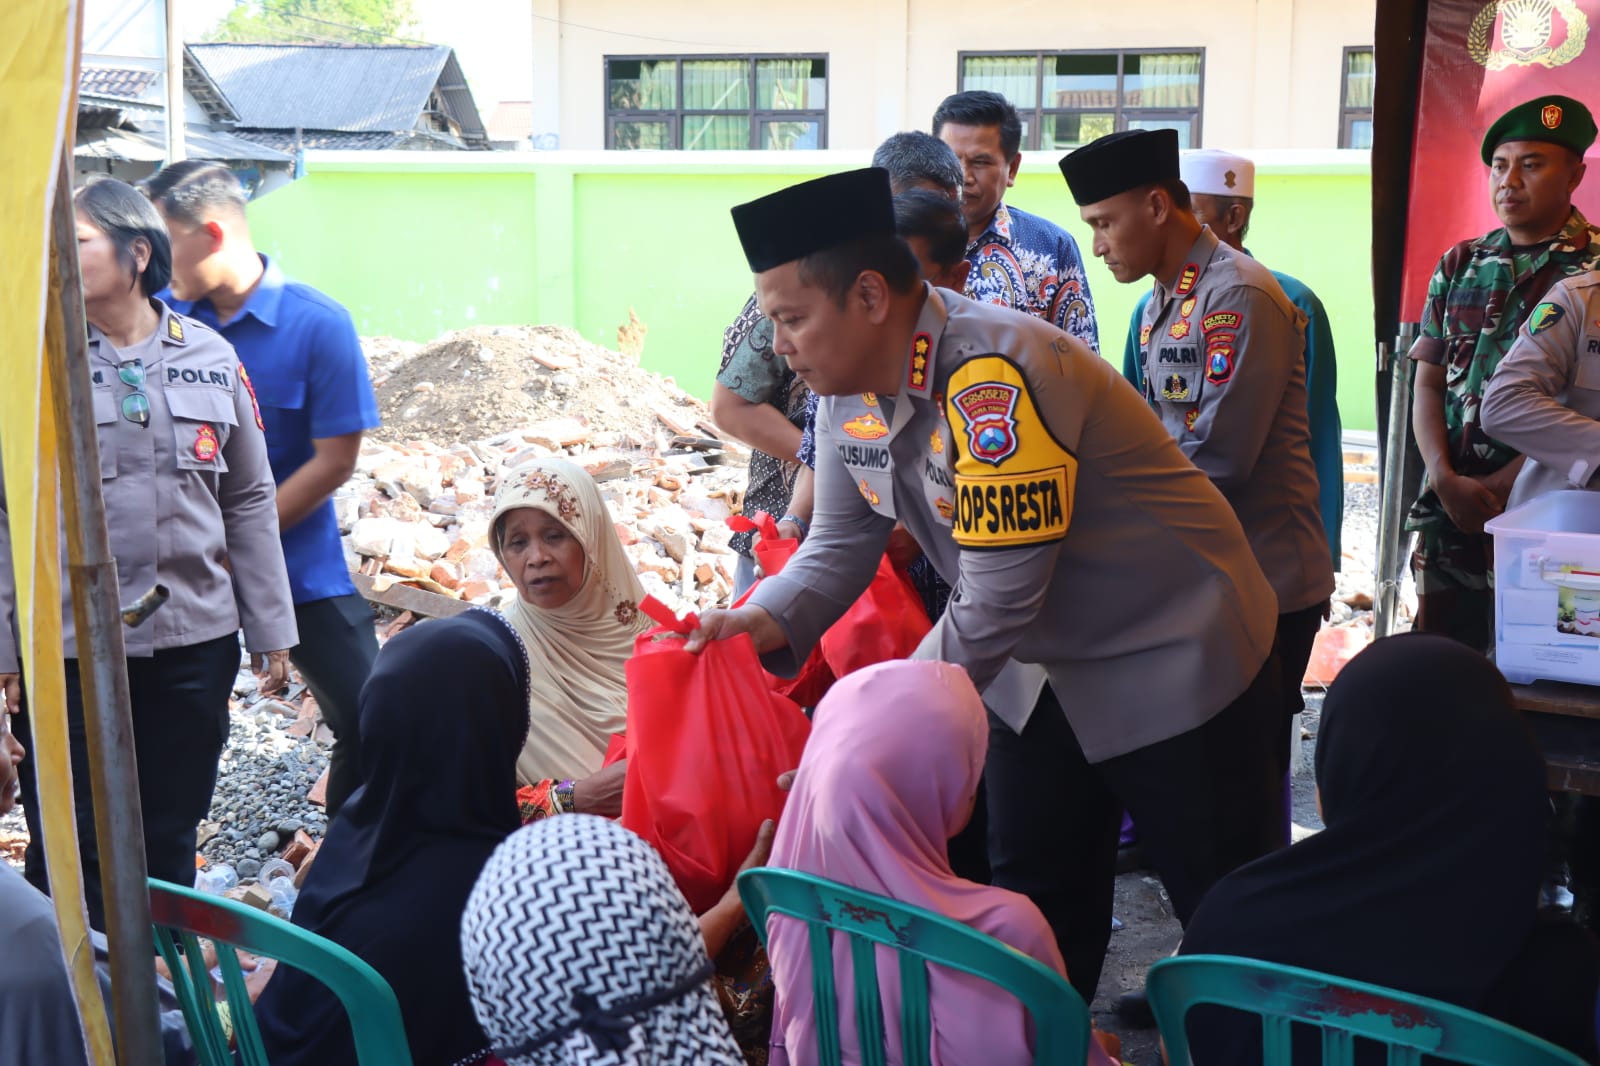 Jumat Curhat di Wonokalang, Polresta Sidoarjo Bantu Pembangunan Masjid dan Sampaikan Imbauan Kamtibmas